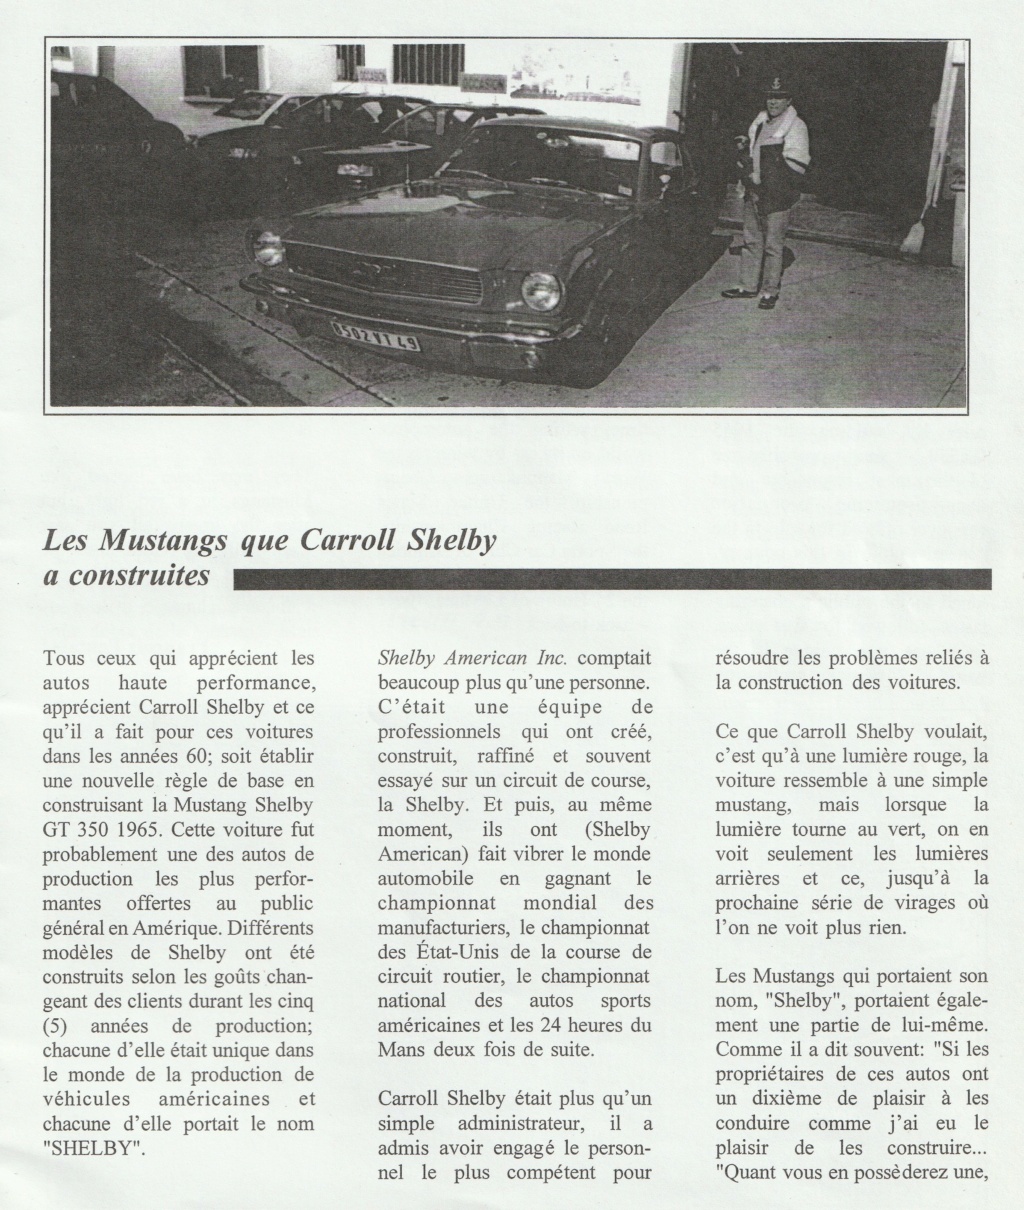 Montréal Mustang dans le temps! 1981 à aujourd'hui (Histoire en photos) - Page 8 Img_2350